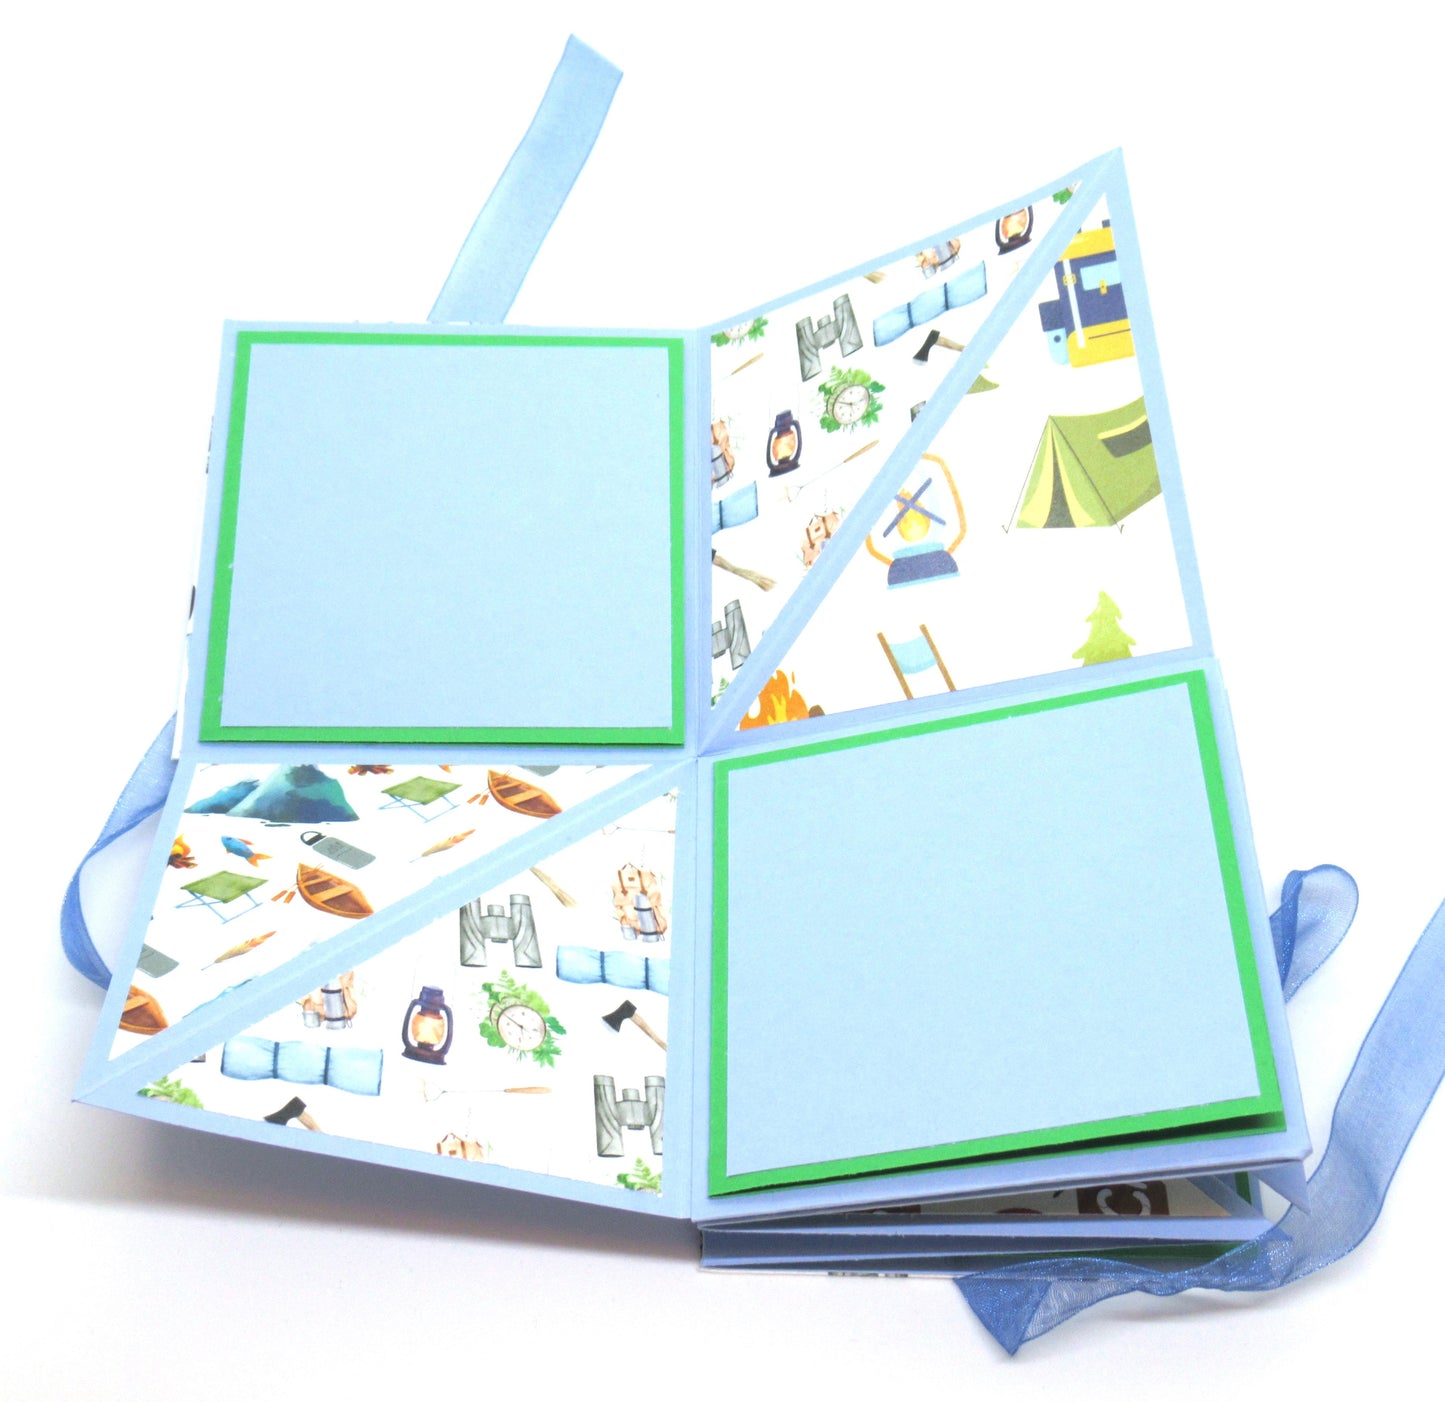 Deluxe ACCORDION Mini ALBUM - Handcrafted Photo Album - Stationery - Literacy Project - Mini Memory Book - Mini Camping Album - Mini Brag Book - 118